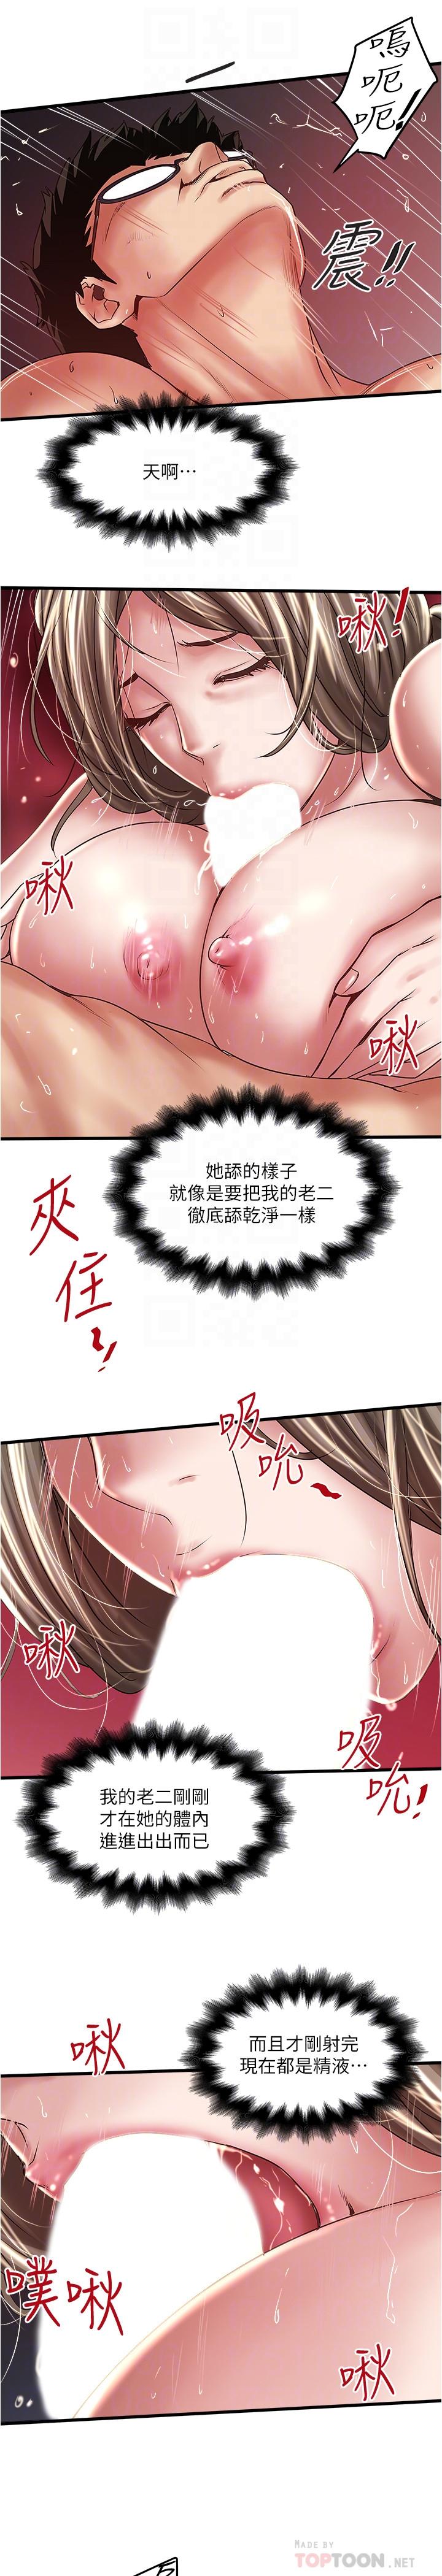 韩国污漫画 下女,初希 第70话-像是大扫除般的淫乱吸允 16